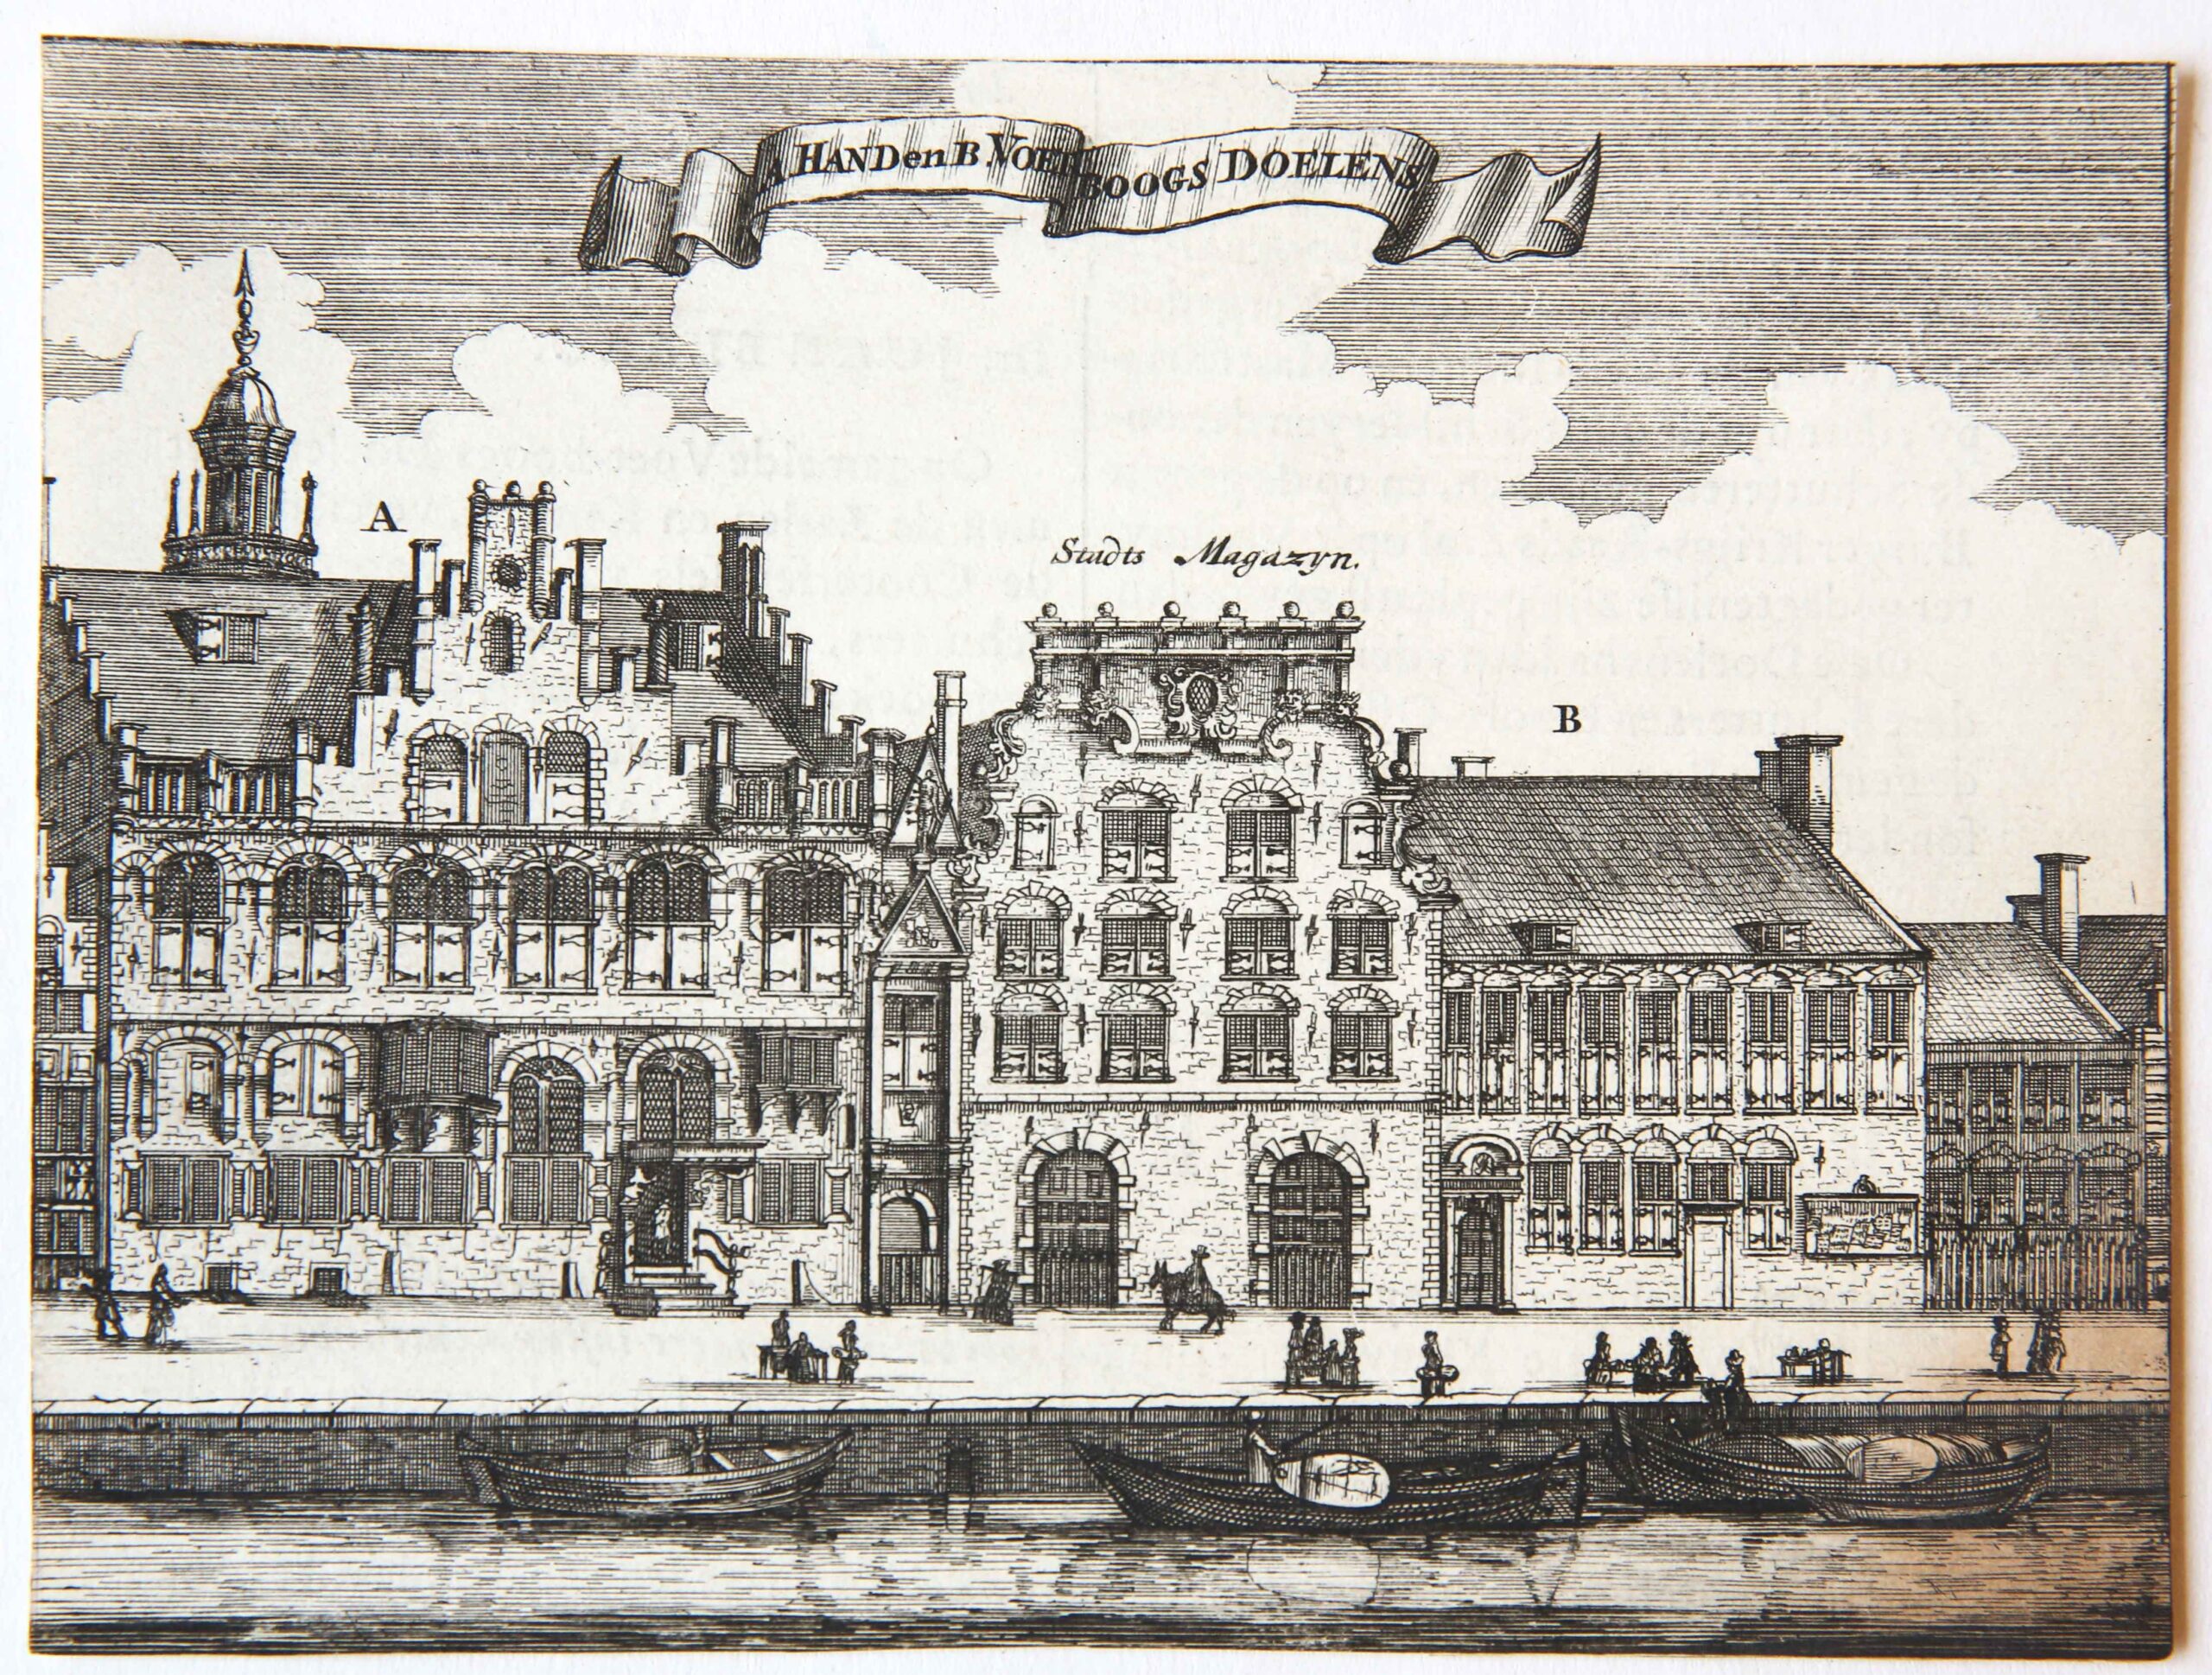 [Amsterdam Copperplate engraving] A. Hand en B. Voetboogs Doelens, 1726.